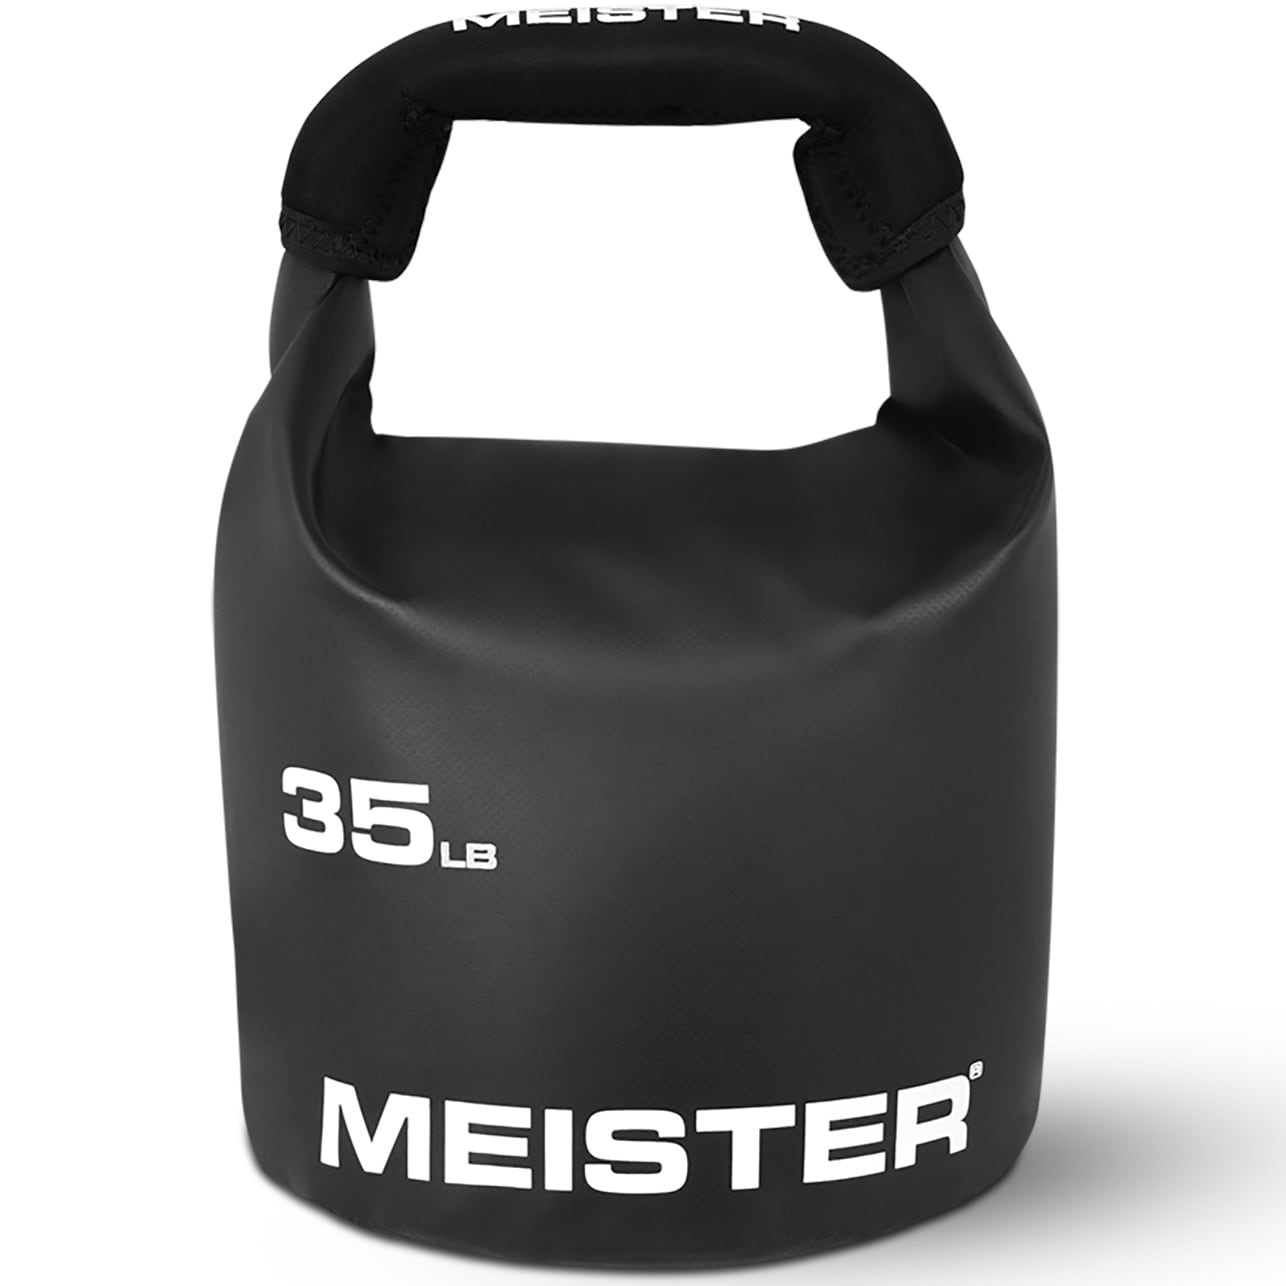 Meister Beast Portable Sand Kettlebell - 35lb / 15.9kg, Neoprene